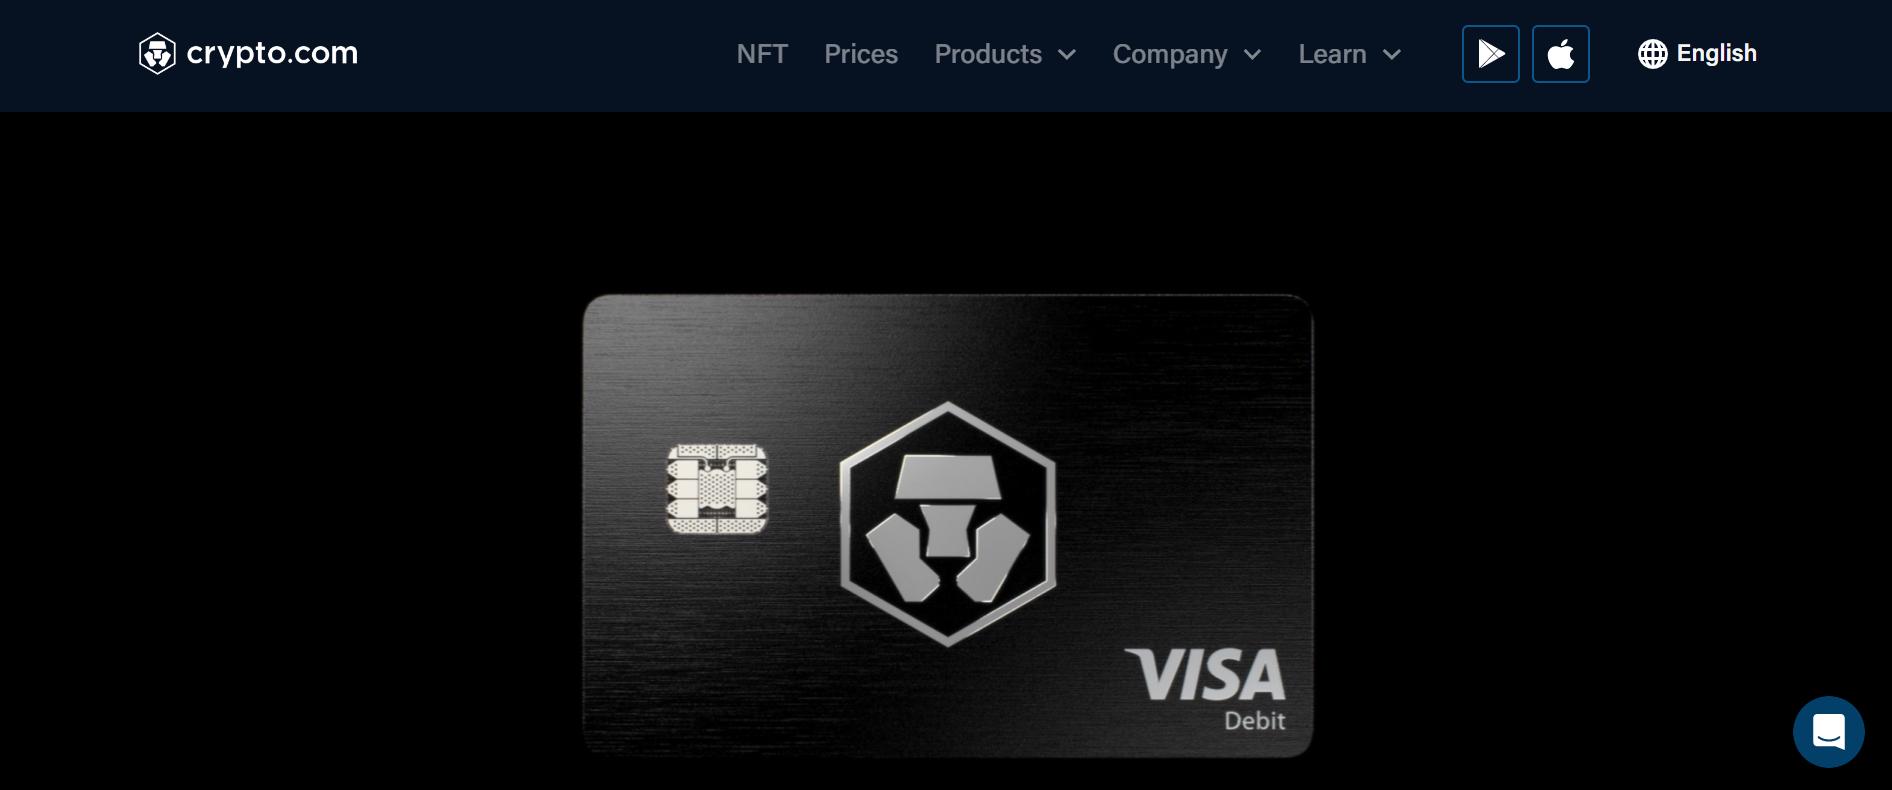 Crypto.com Visa card